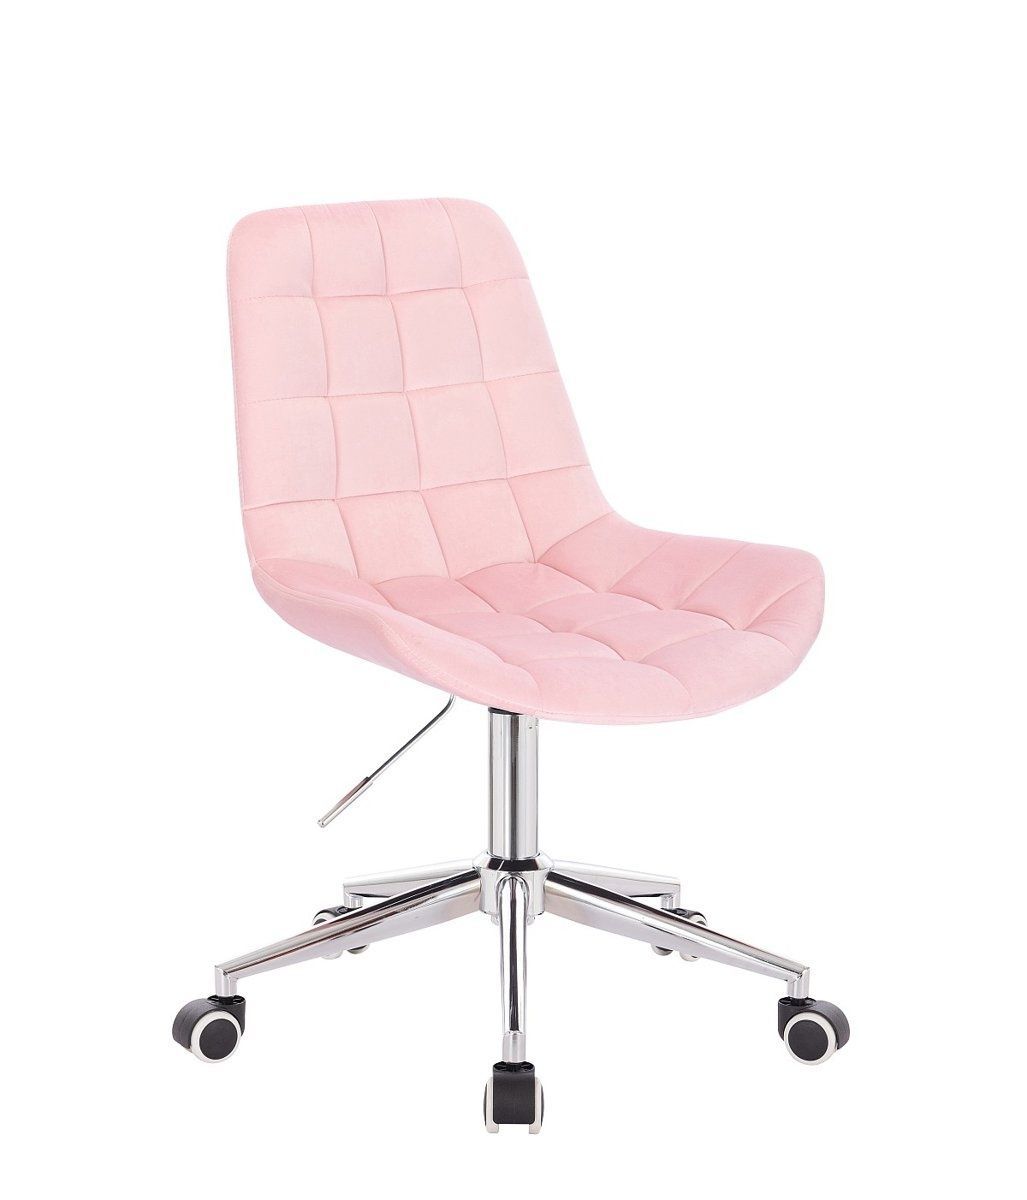 Židle PARIS VELUR na stříbrné podstavě s kolečky - světle růžová